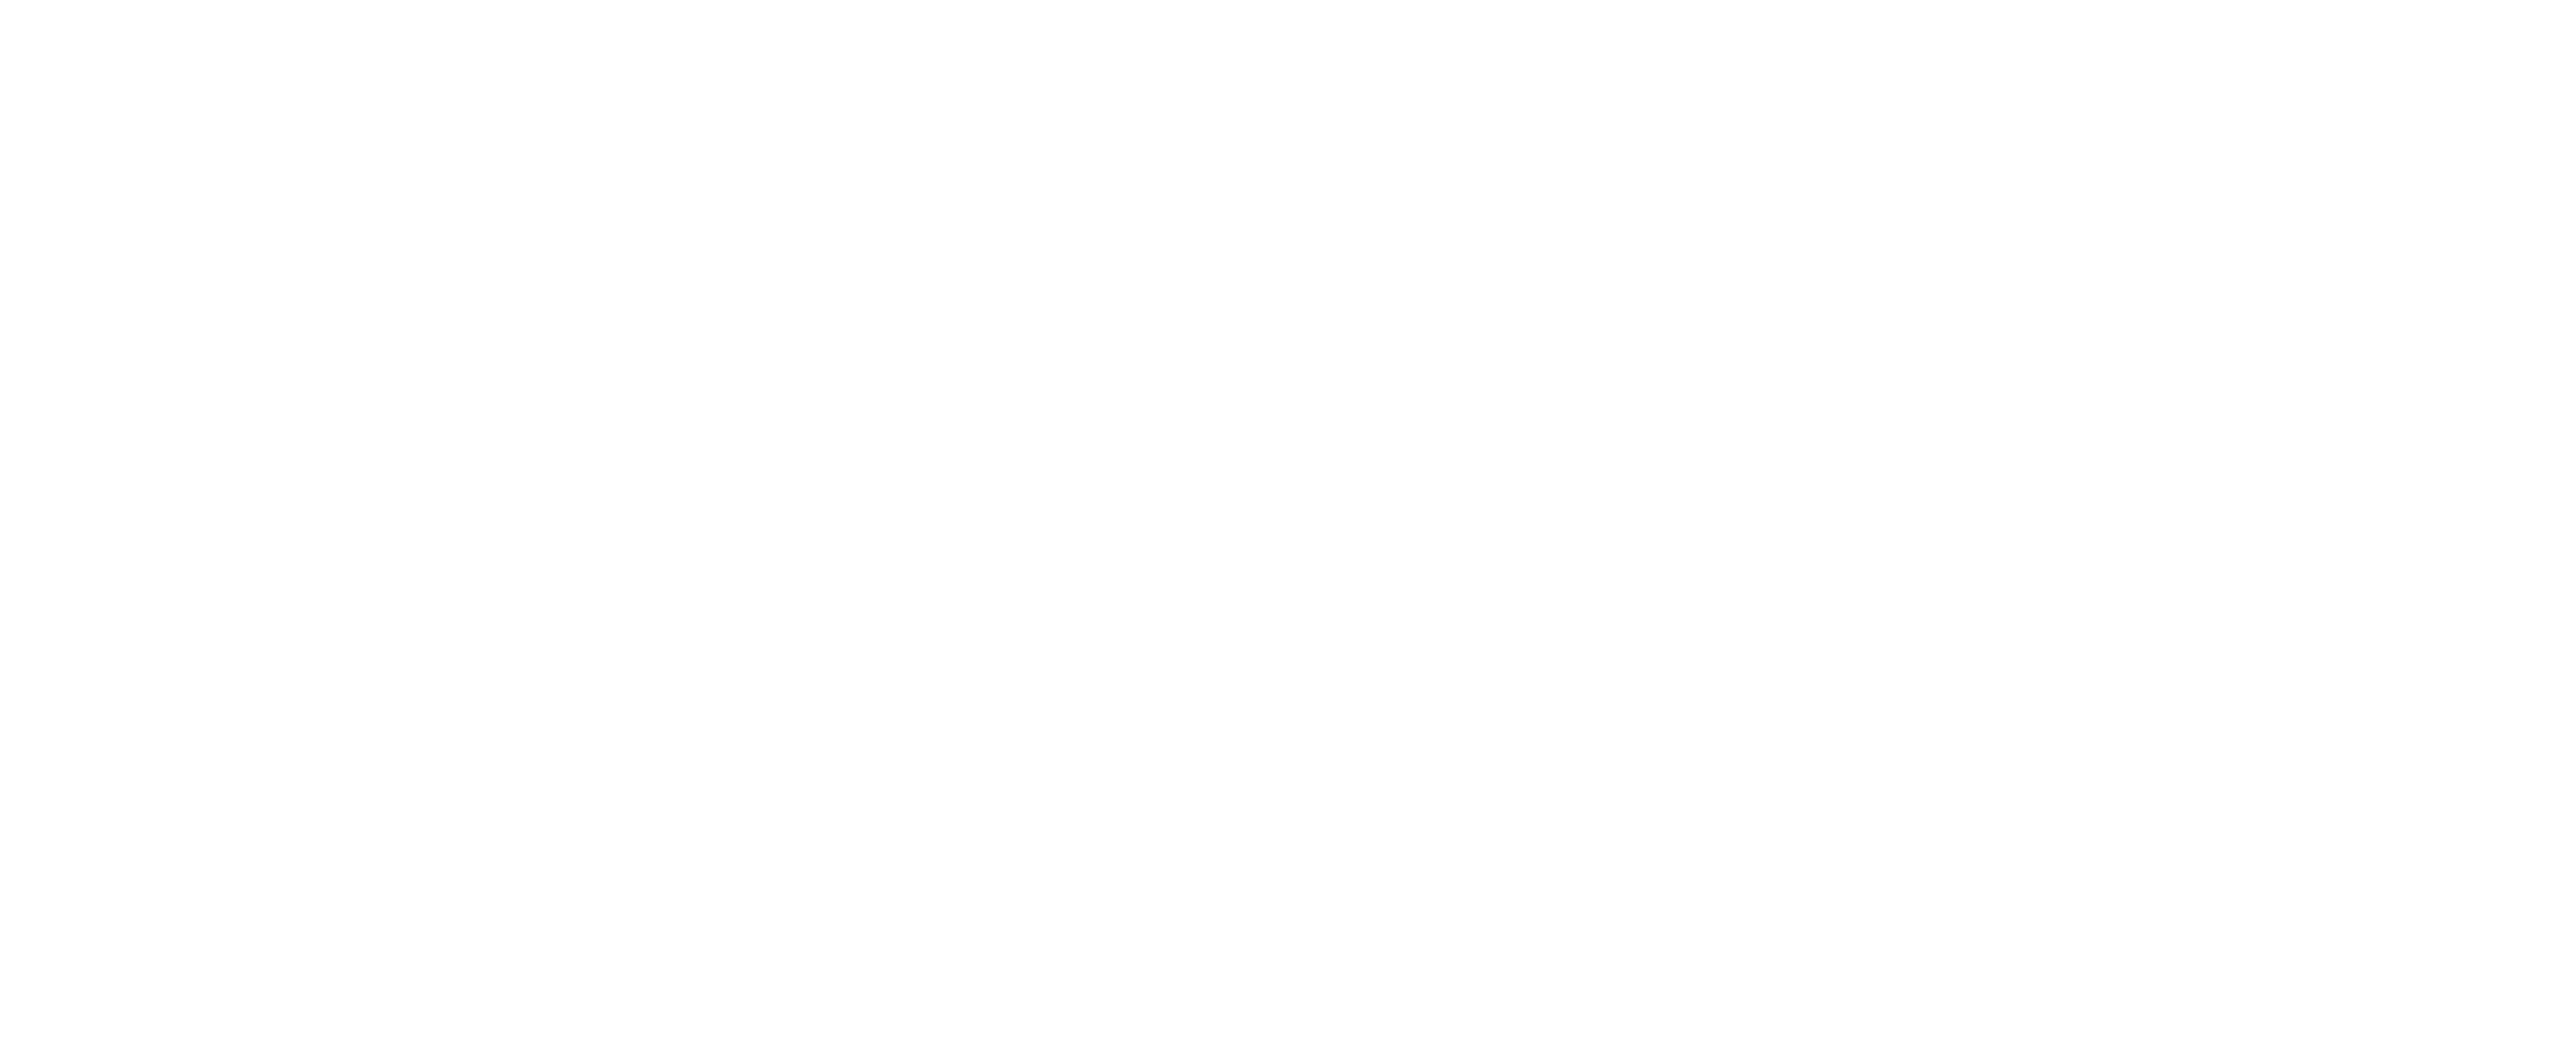 The Factotum